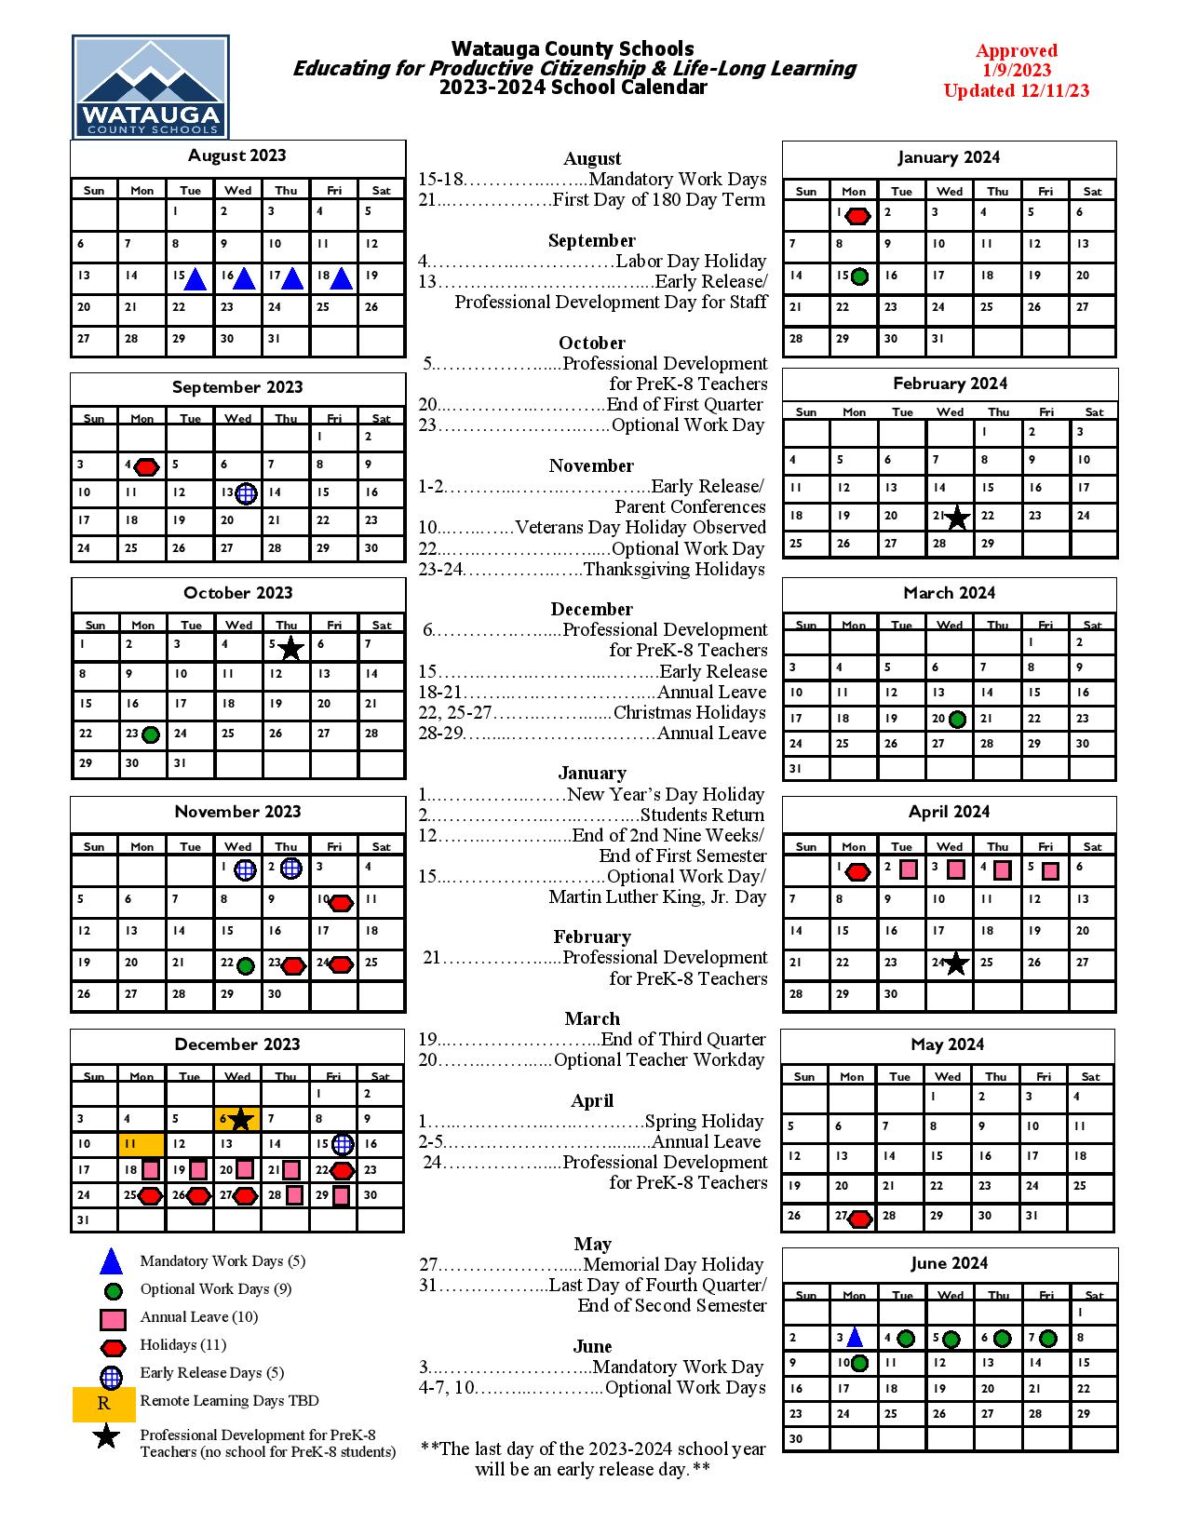 Watauga County Schools Calendar 20232024 in PDF